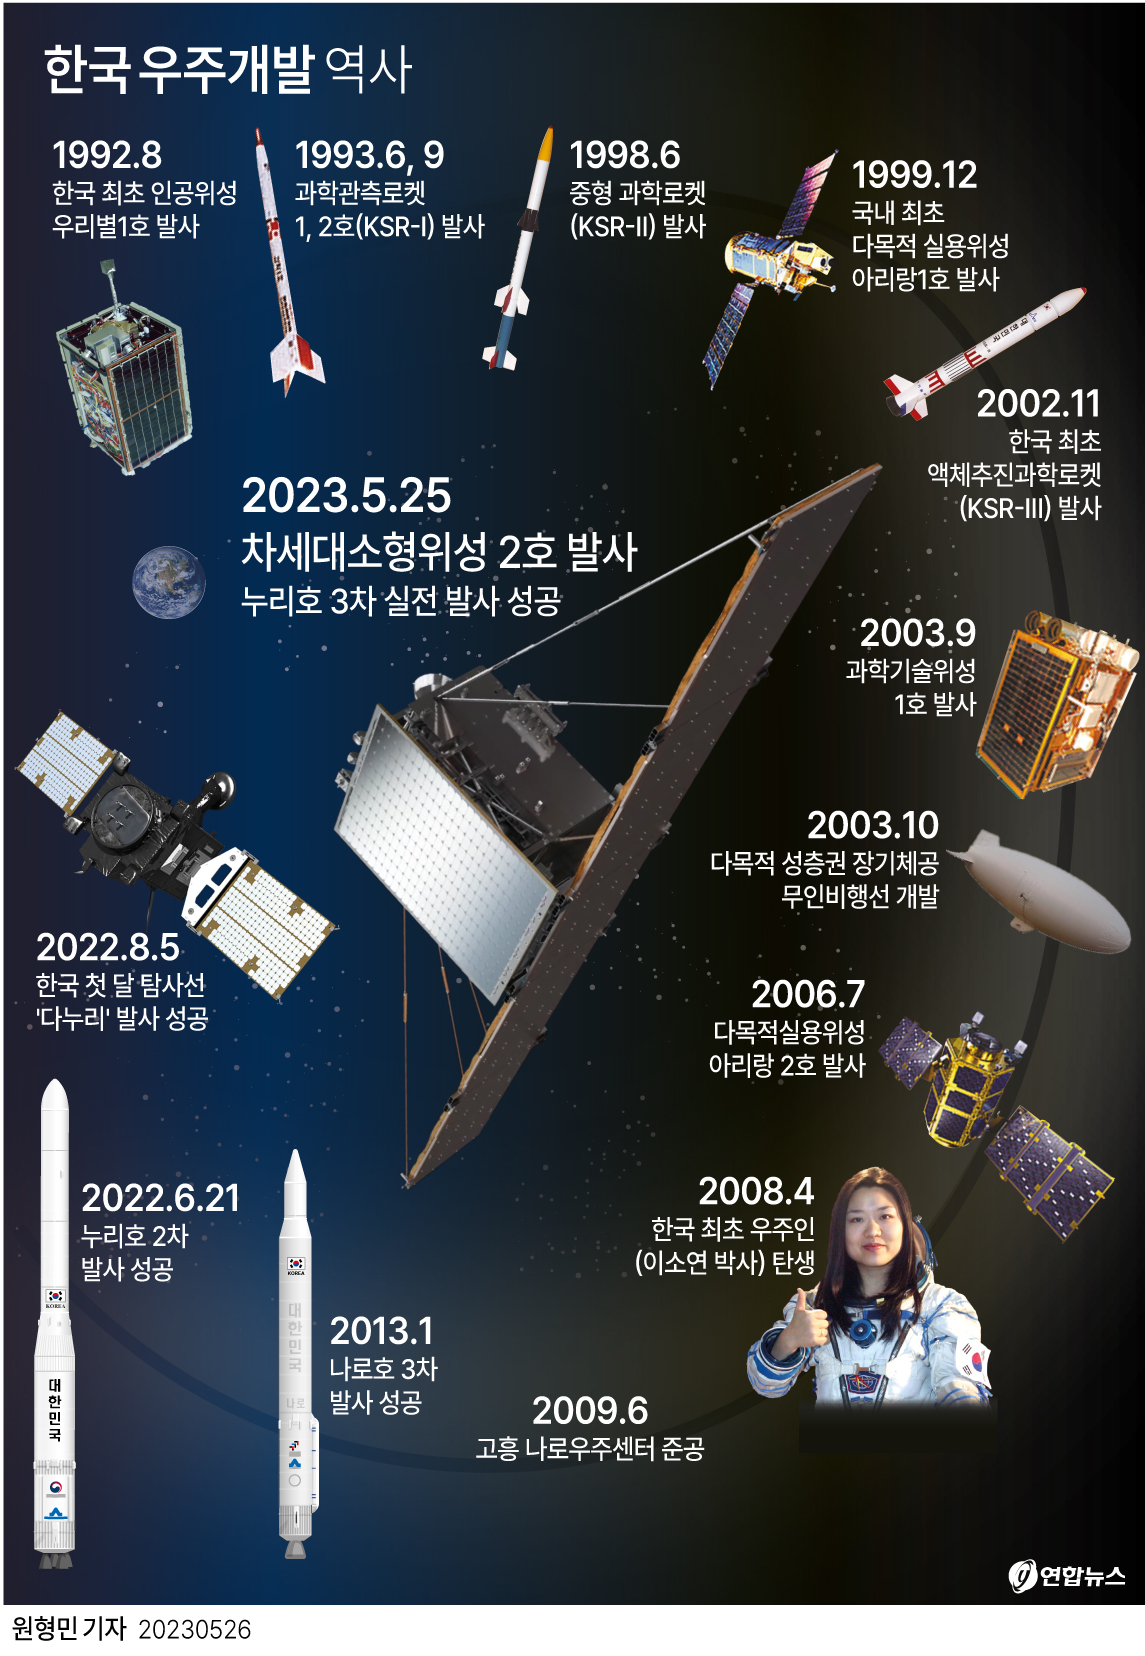 [그래픽] 한국 우주개발 역사